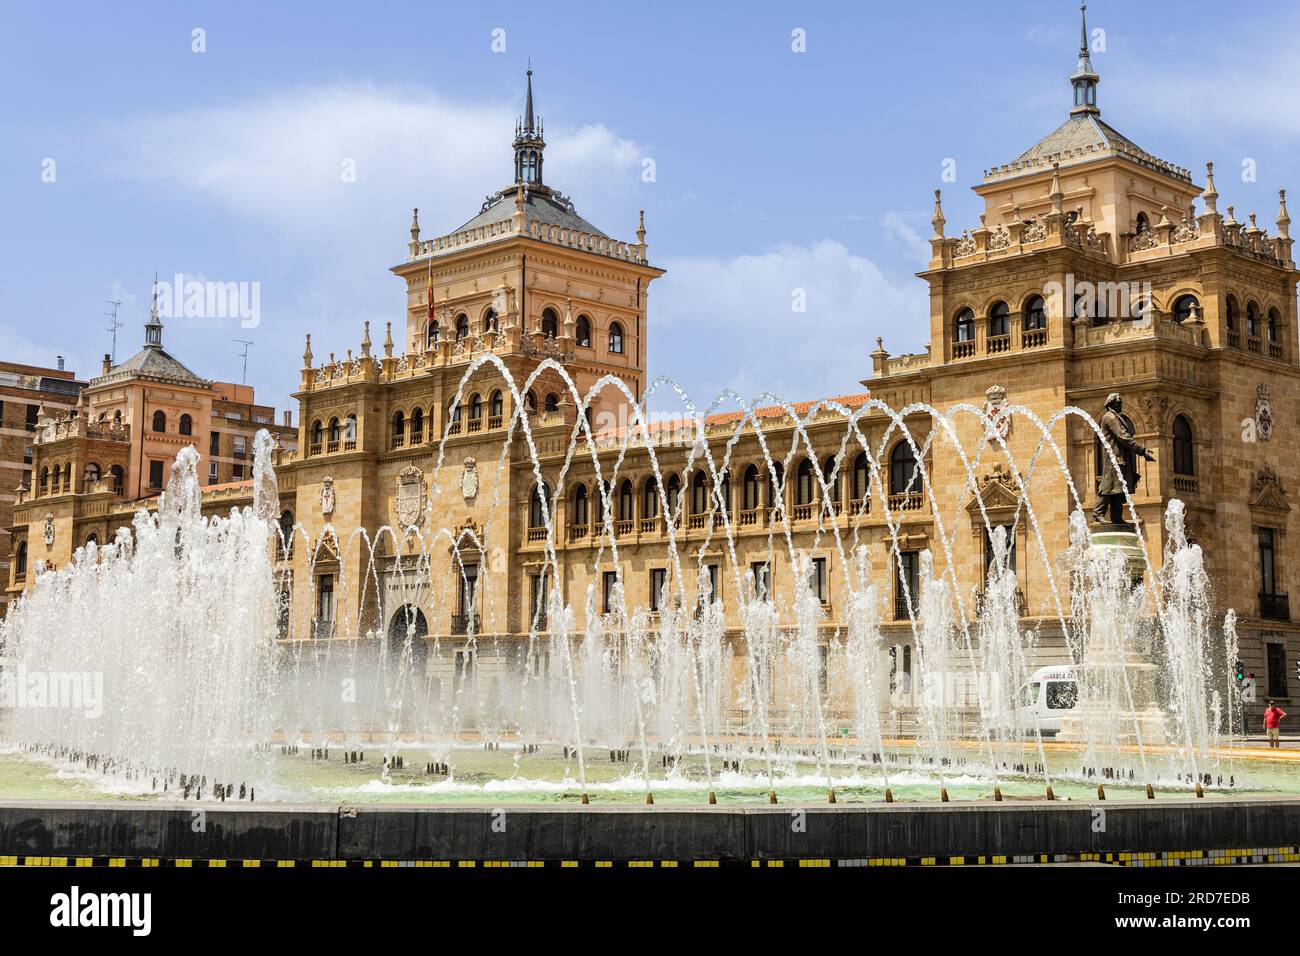 Zentraler Platz Valladolid, Plaza Zorrilla, mit Brunnen und Kavallerieakademie. Castilla y León, Spanien. Stockfoto